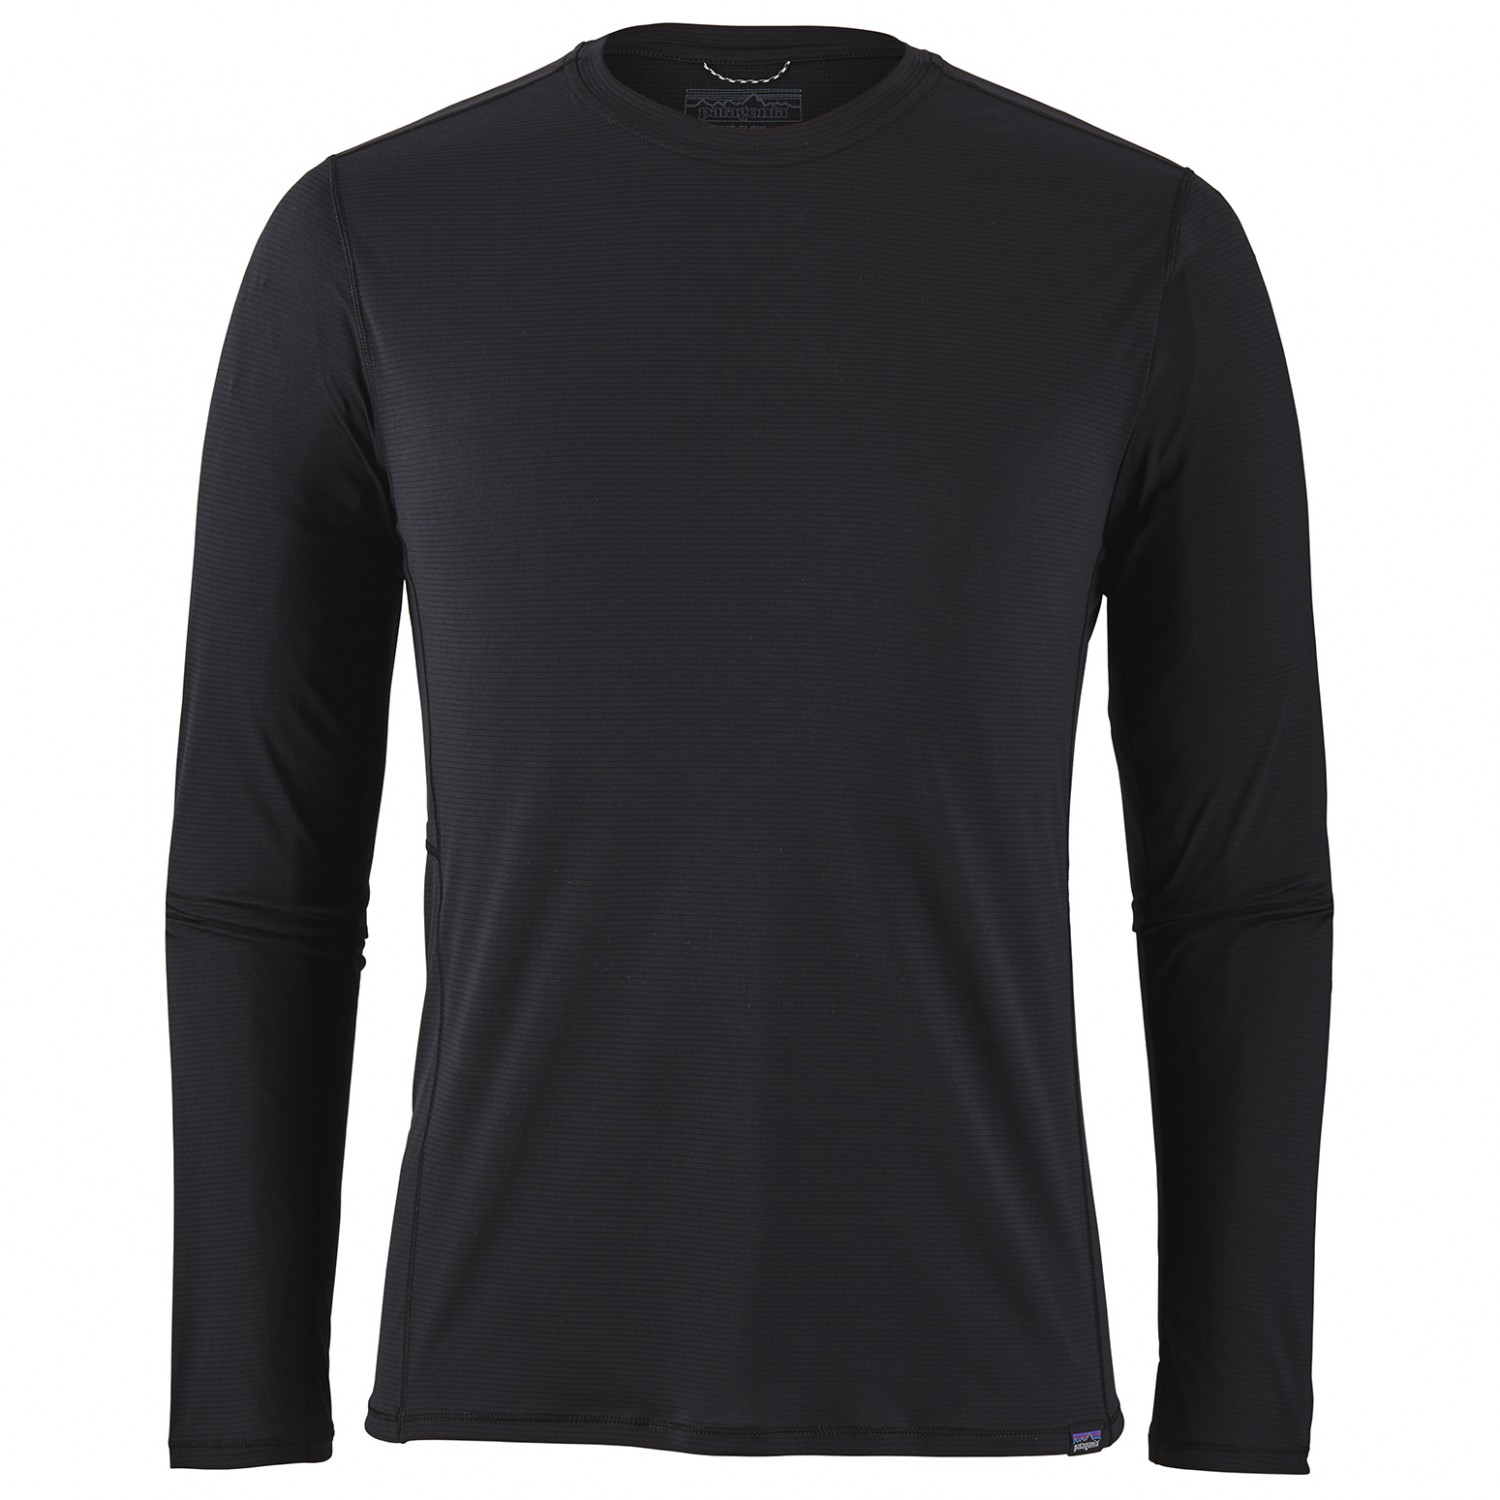 Функциональная рубашка Patagonia L/S Cap Cool Lightweight Shirt, черный цена и фото